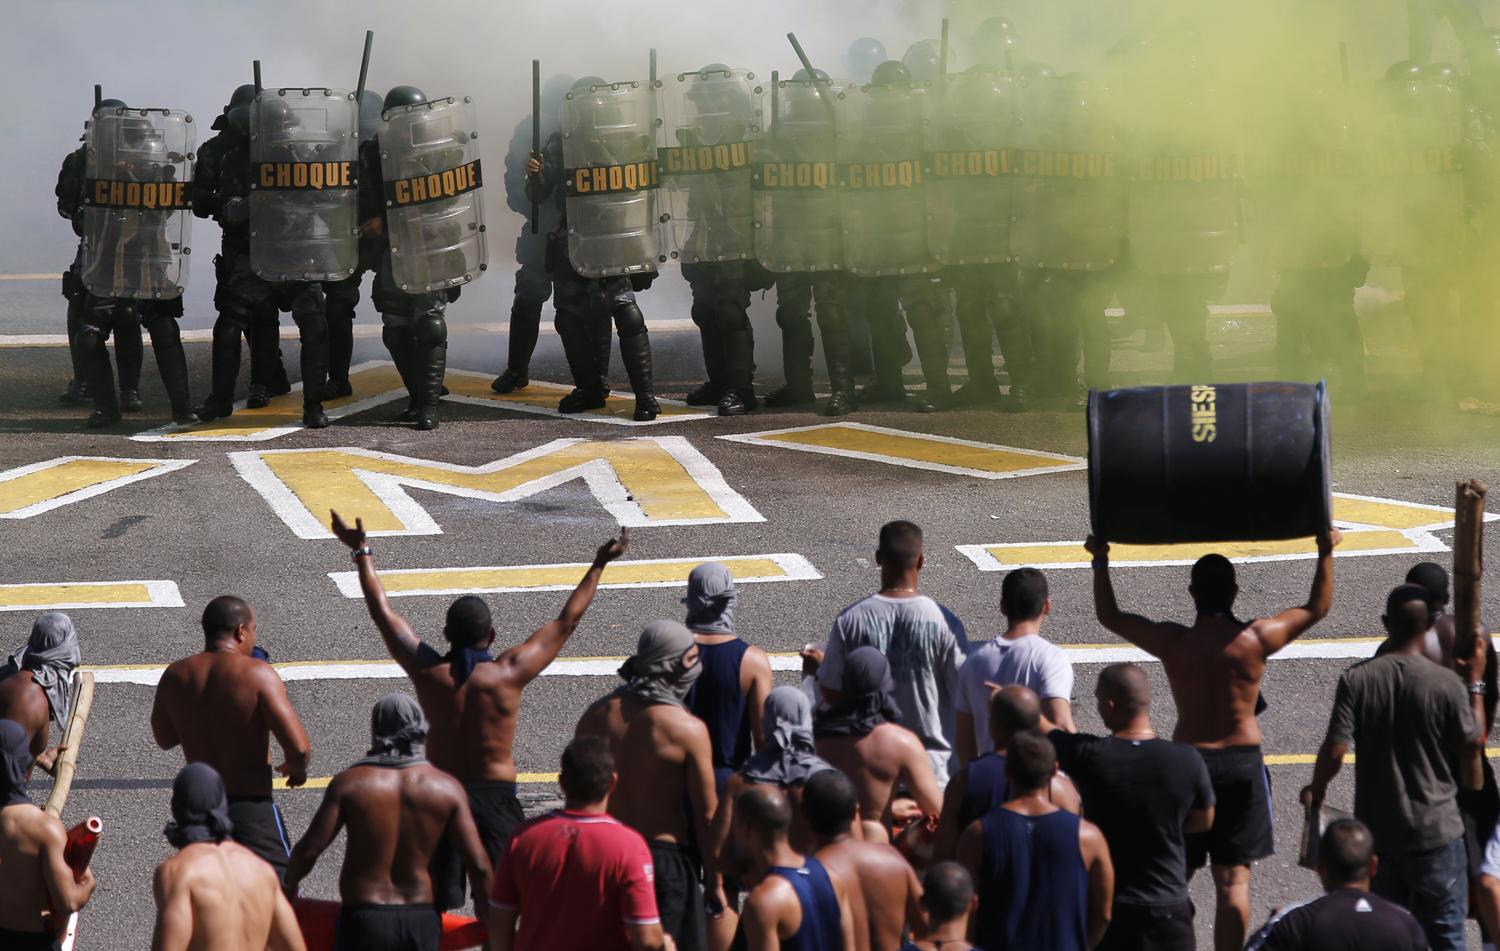 A rendőrség ál-tüntetőkkel edz a világbajnokságra